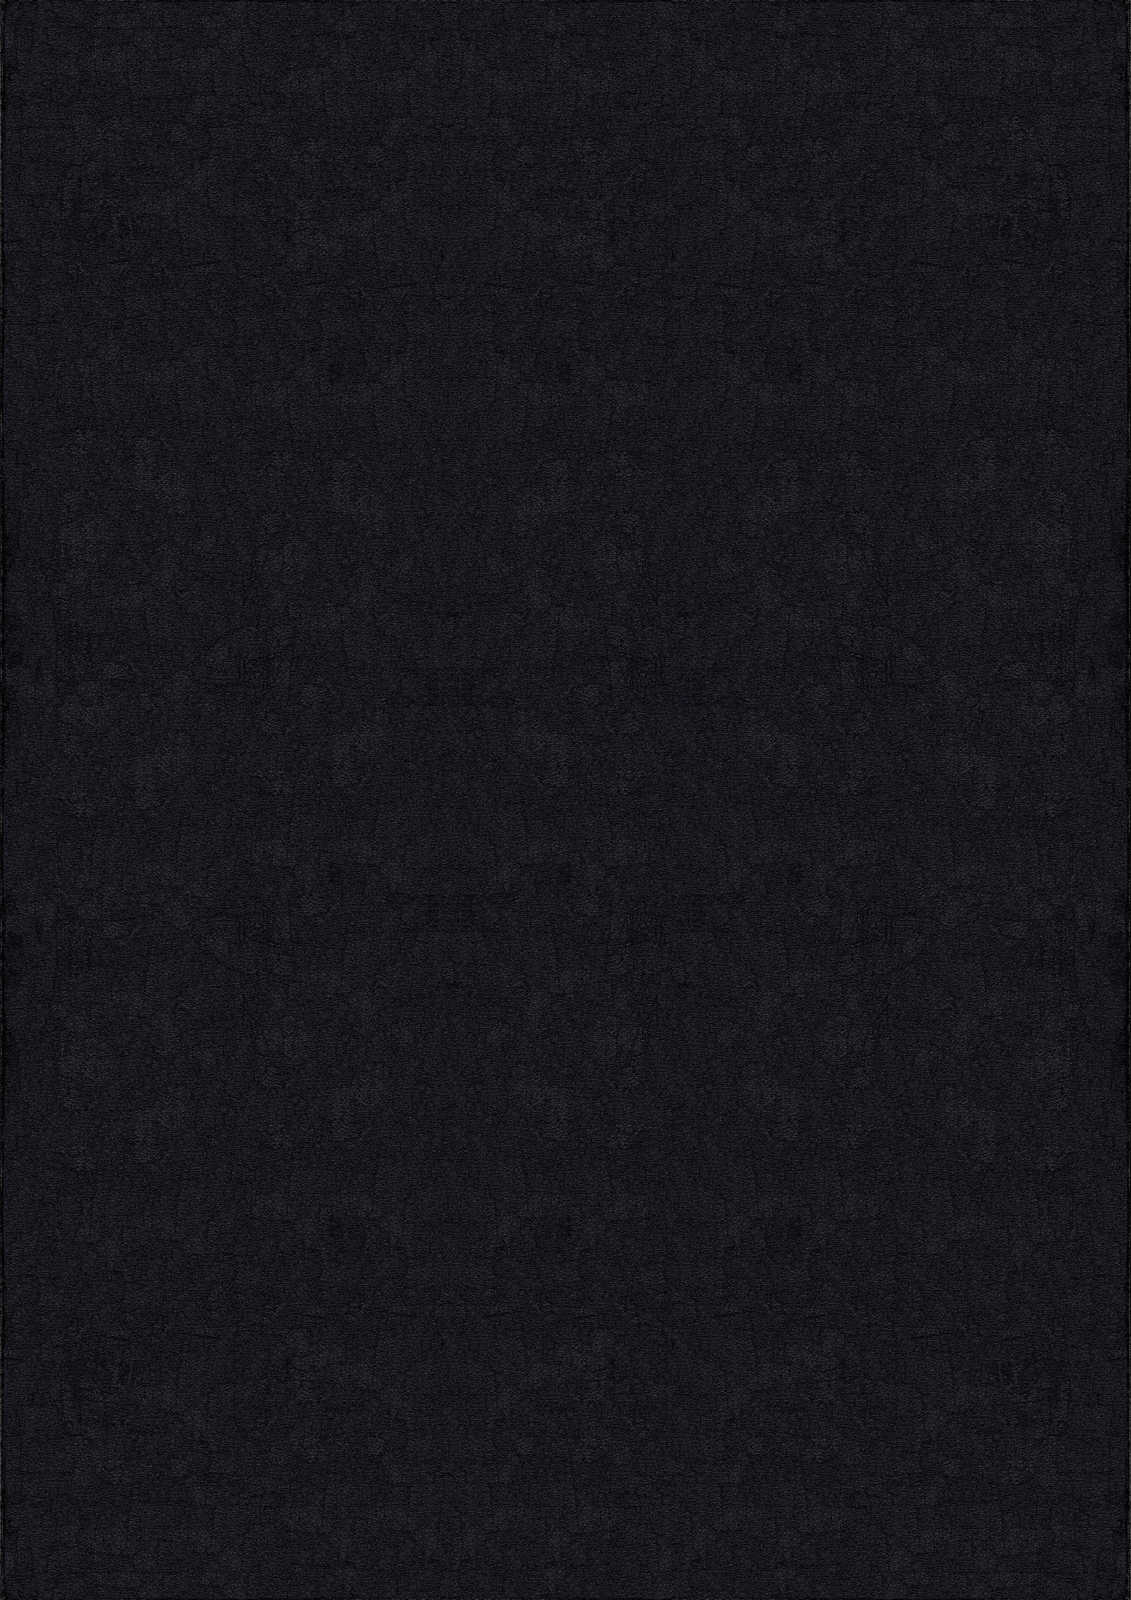             Tapis velouté à poils longs noir - 170 x 120 cm
        